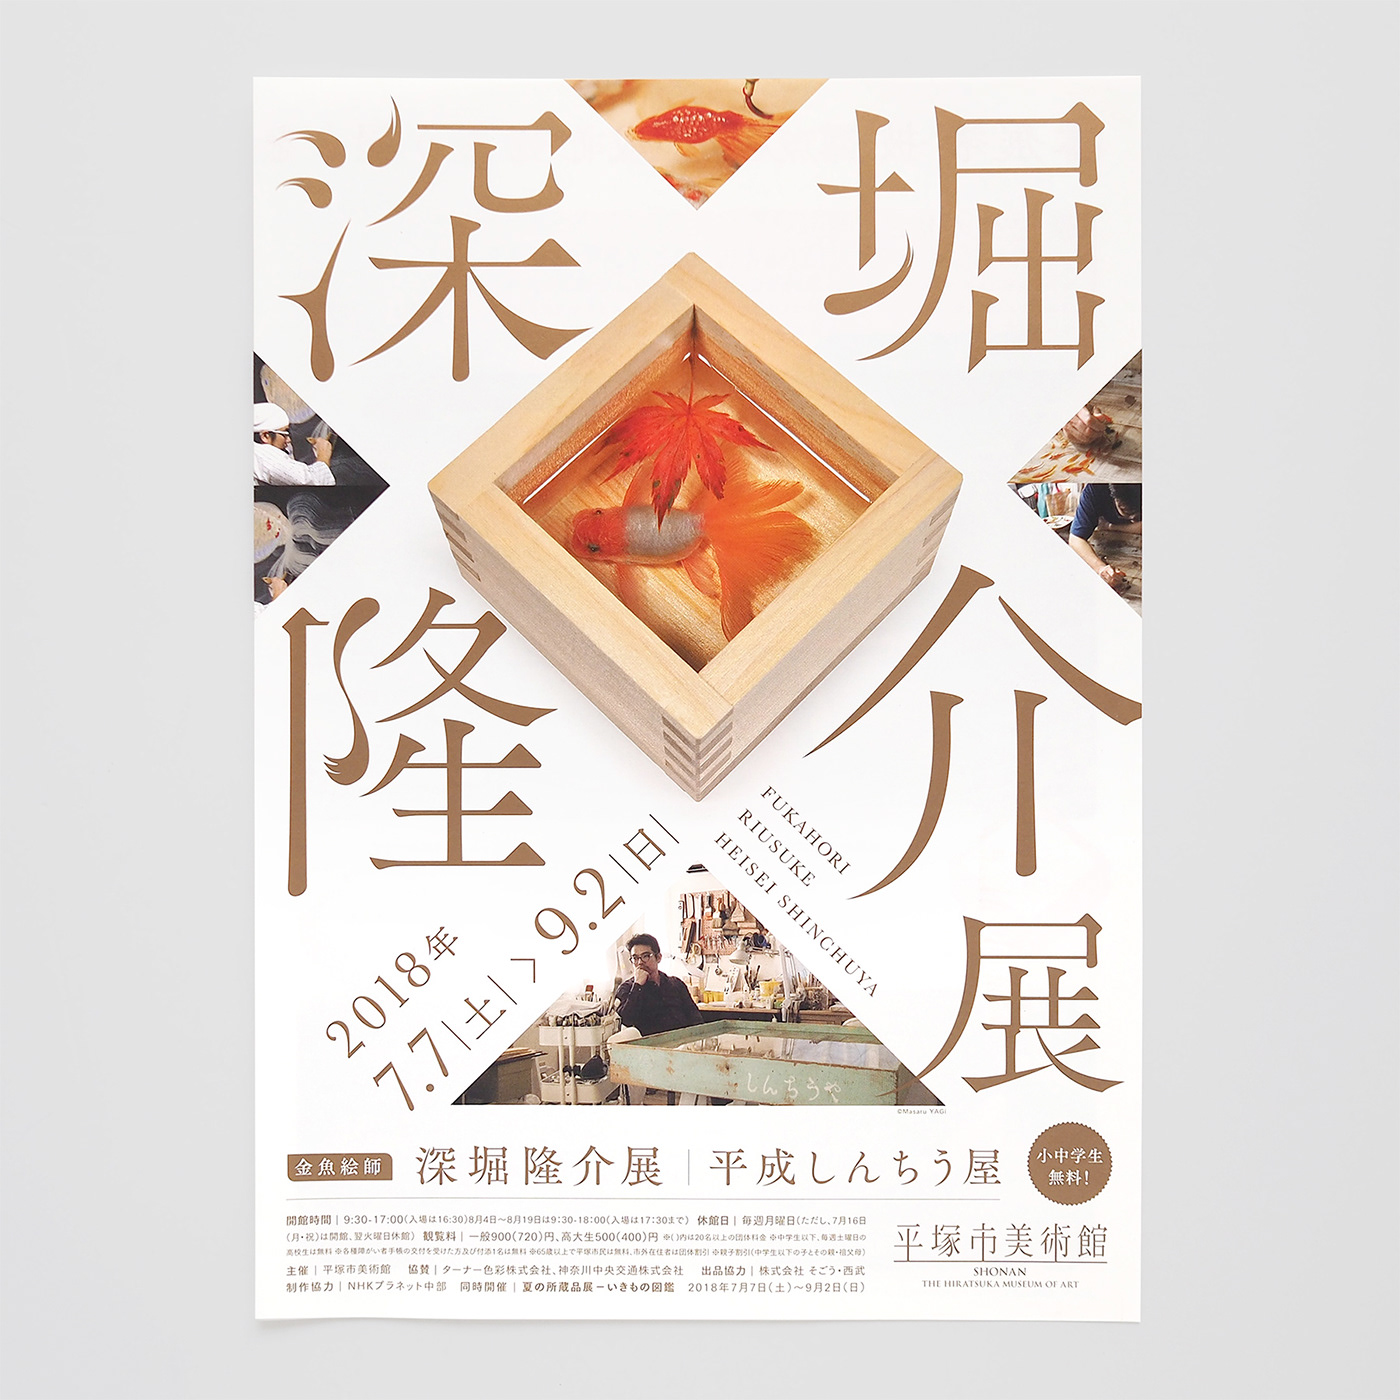 金魚 typography   goldfish gold Exhibition  chinesecharacter 漢字 kanji